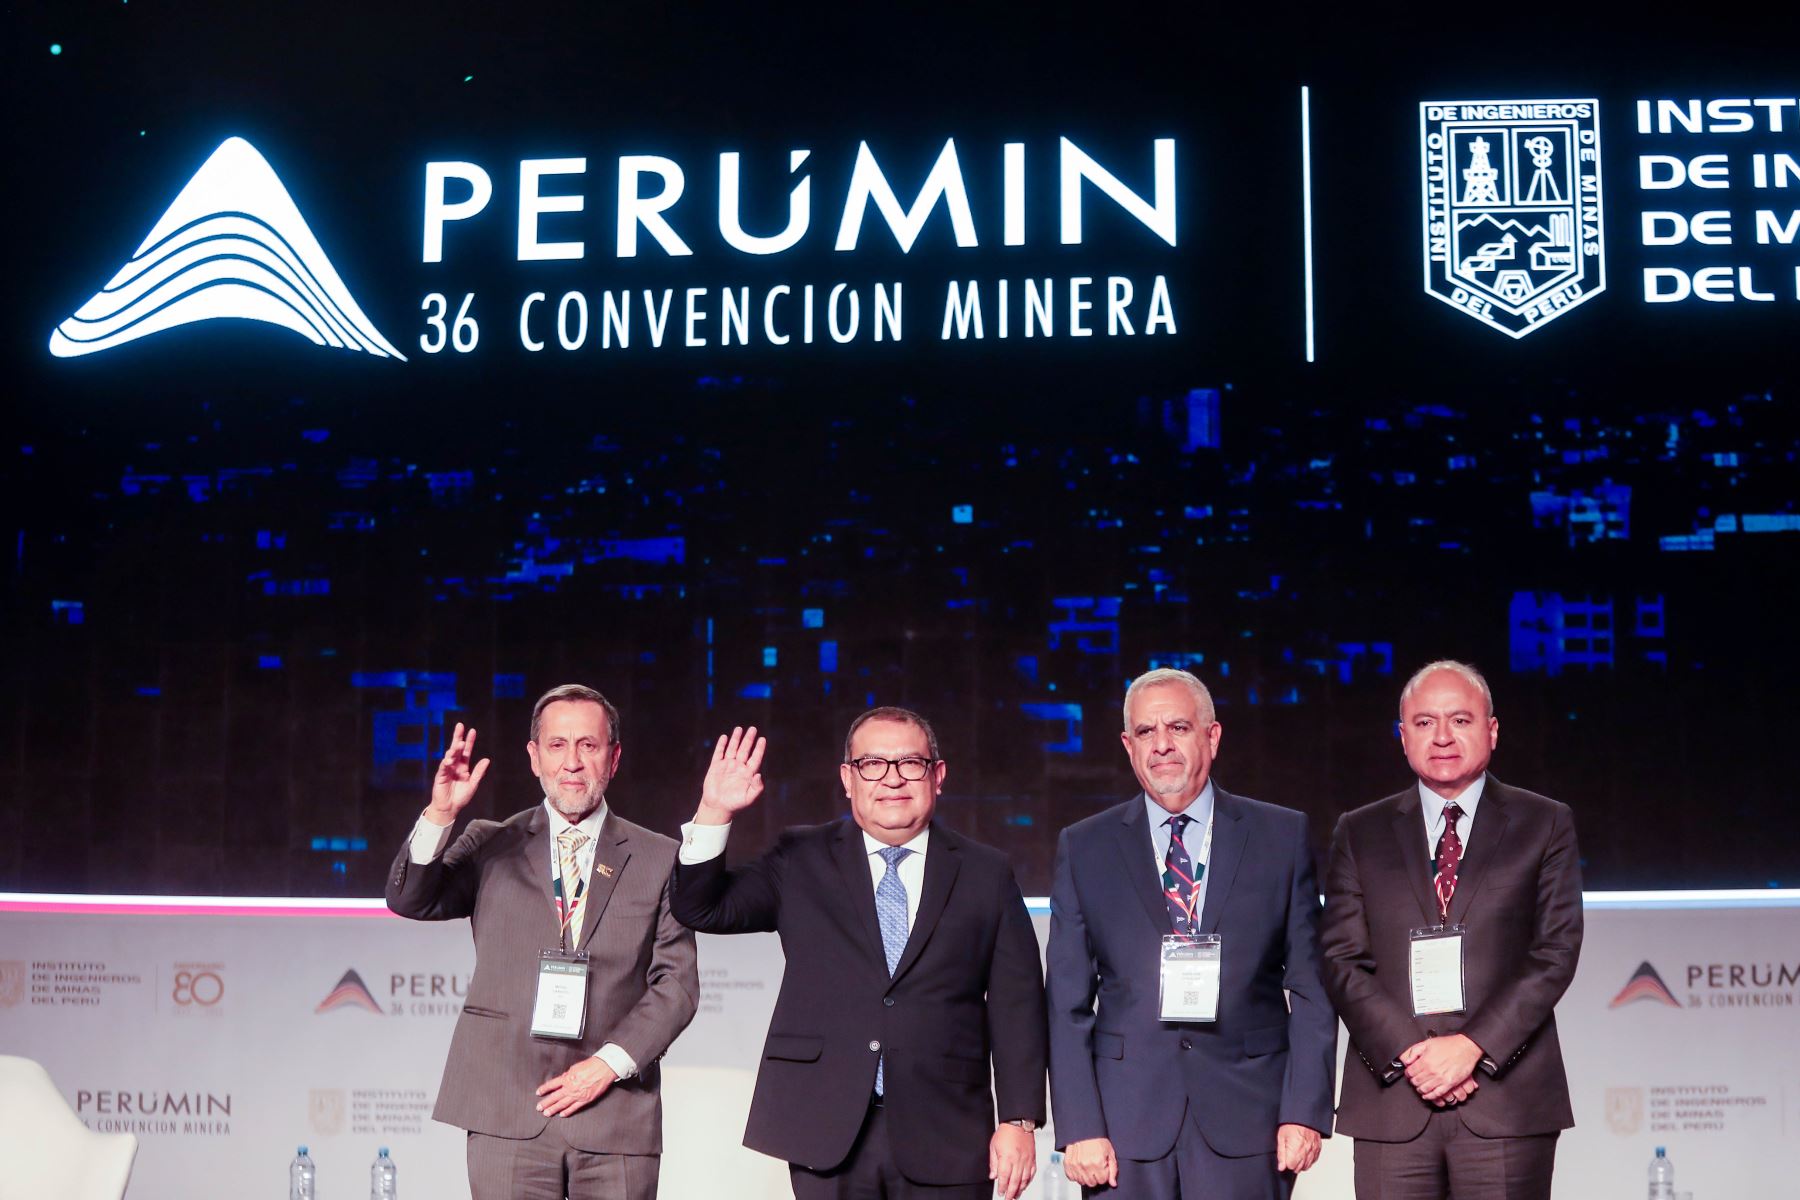 El premier Alberto Otárola participa en la Convención Minera PERUMIN en Arequipa. Foto: ANDINA/Ricardo Cuba